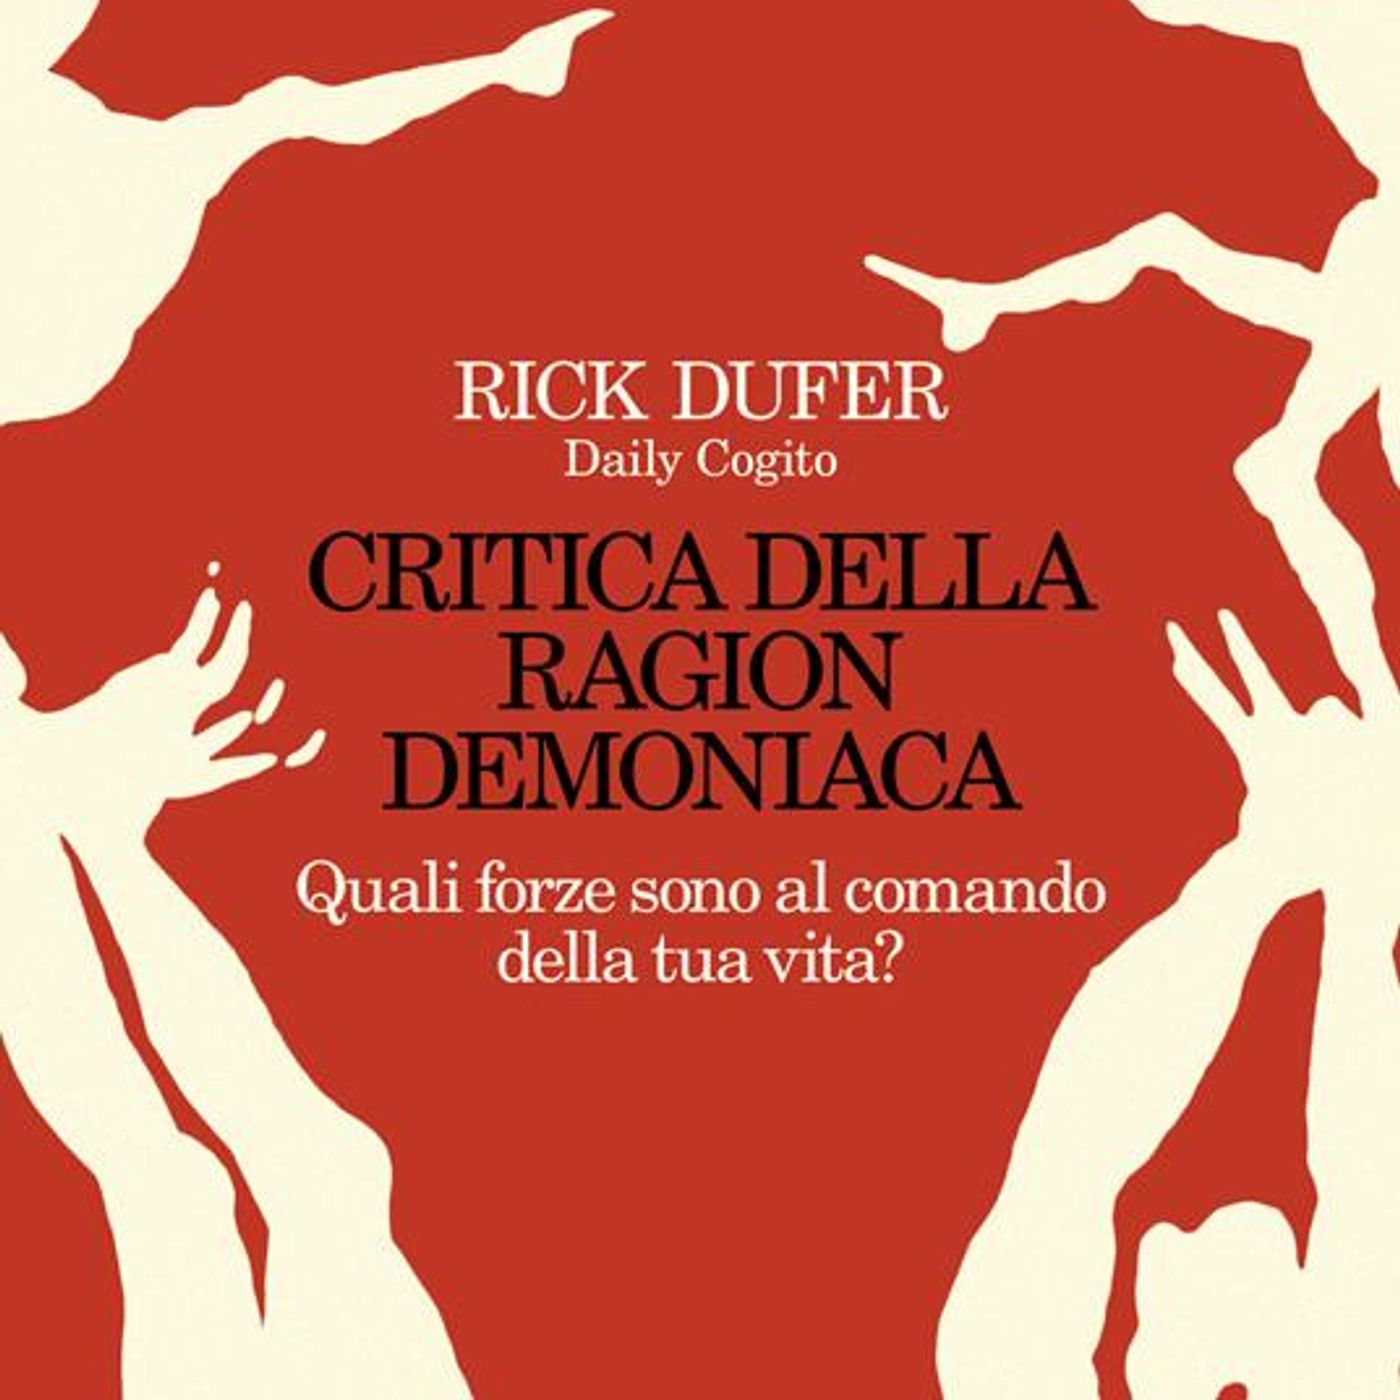 Rick Dufer "Critica della ragion demoniaca"